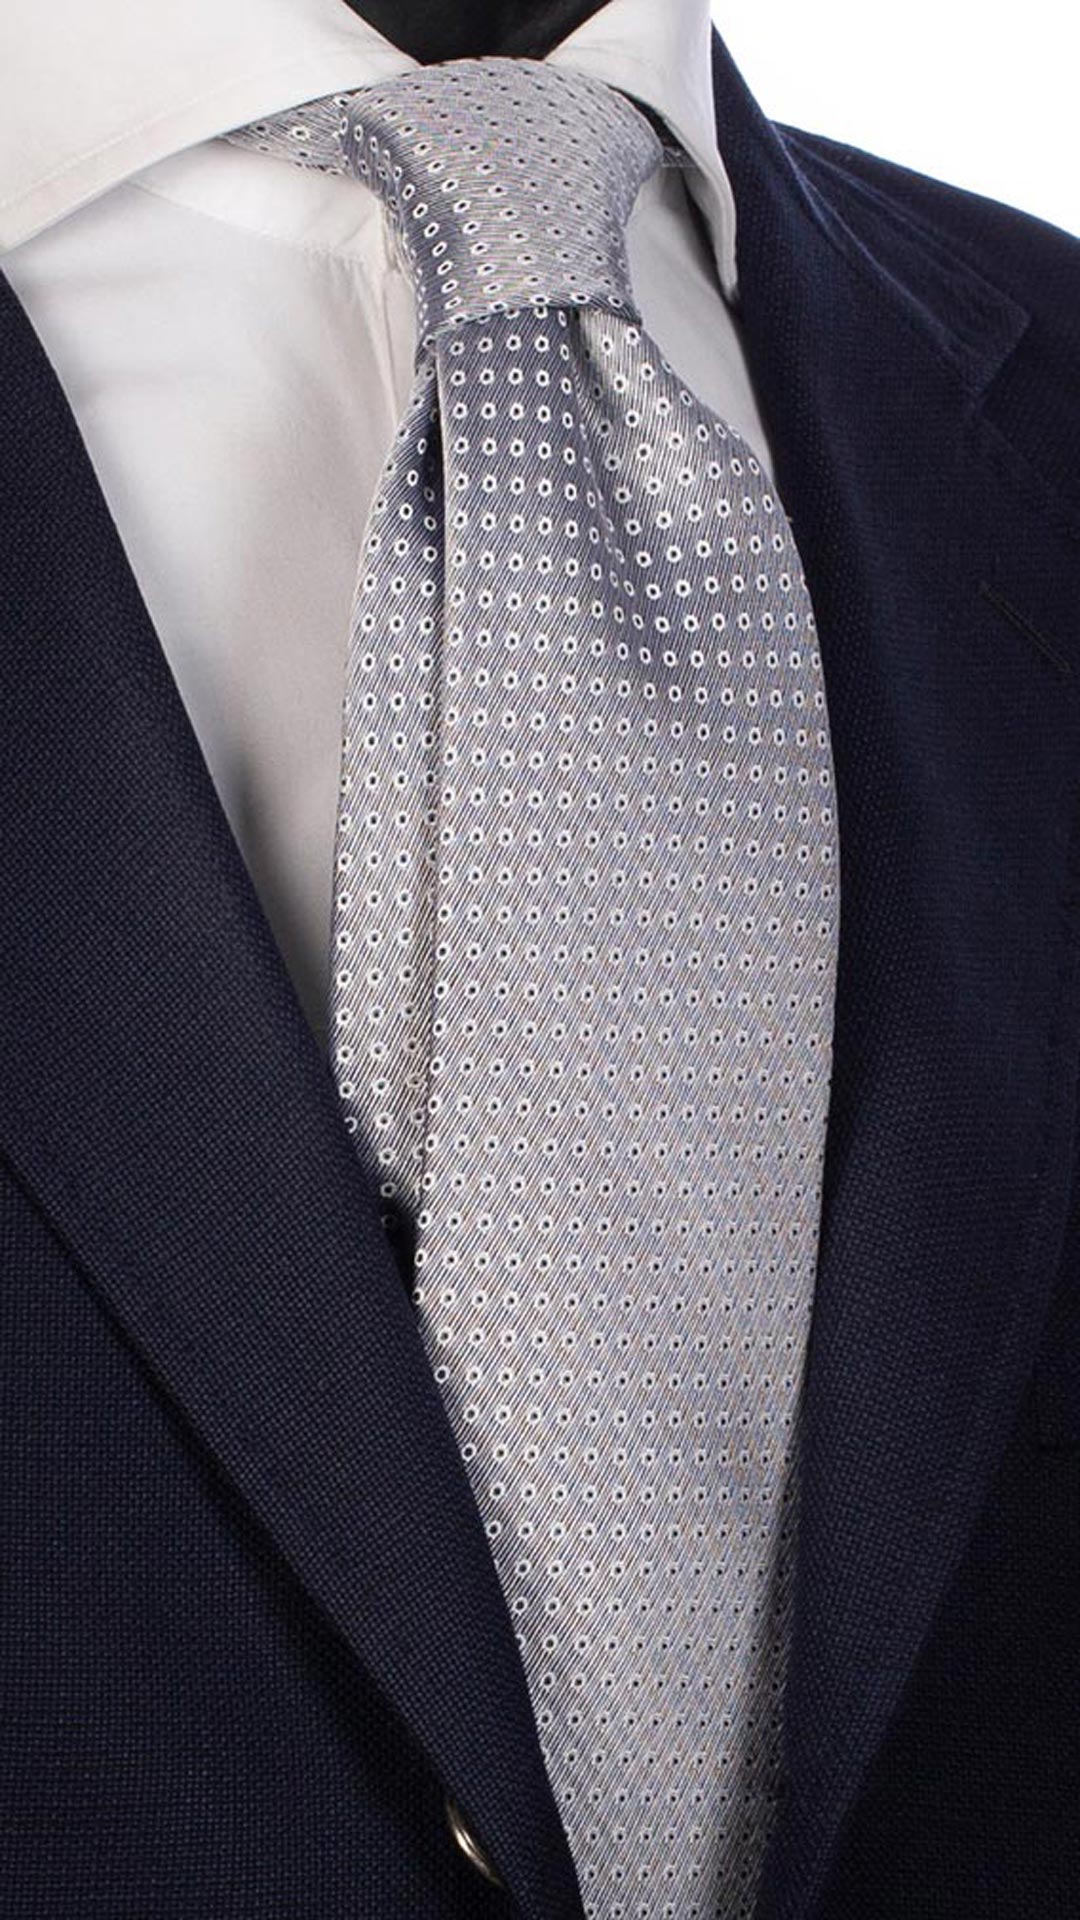 Cravatta da Cerimonia di Seta Blu Bianca Fantasia Tono su Tono CY2768 Made in Italy Graffeo Cravatte